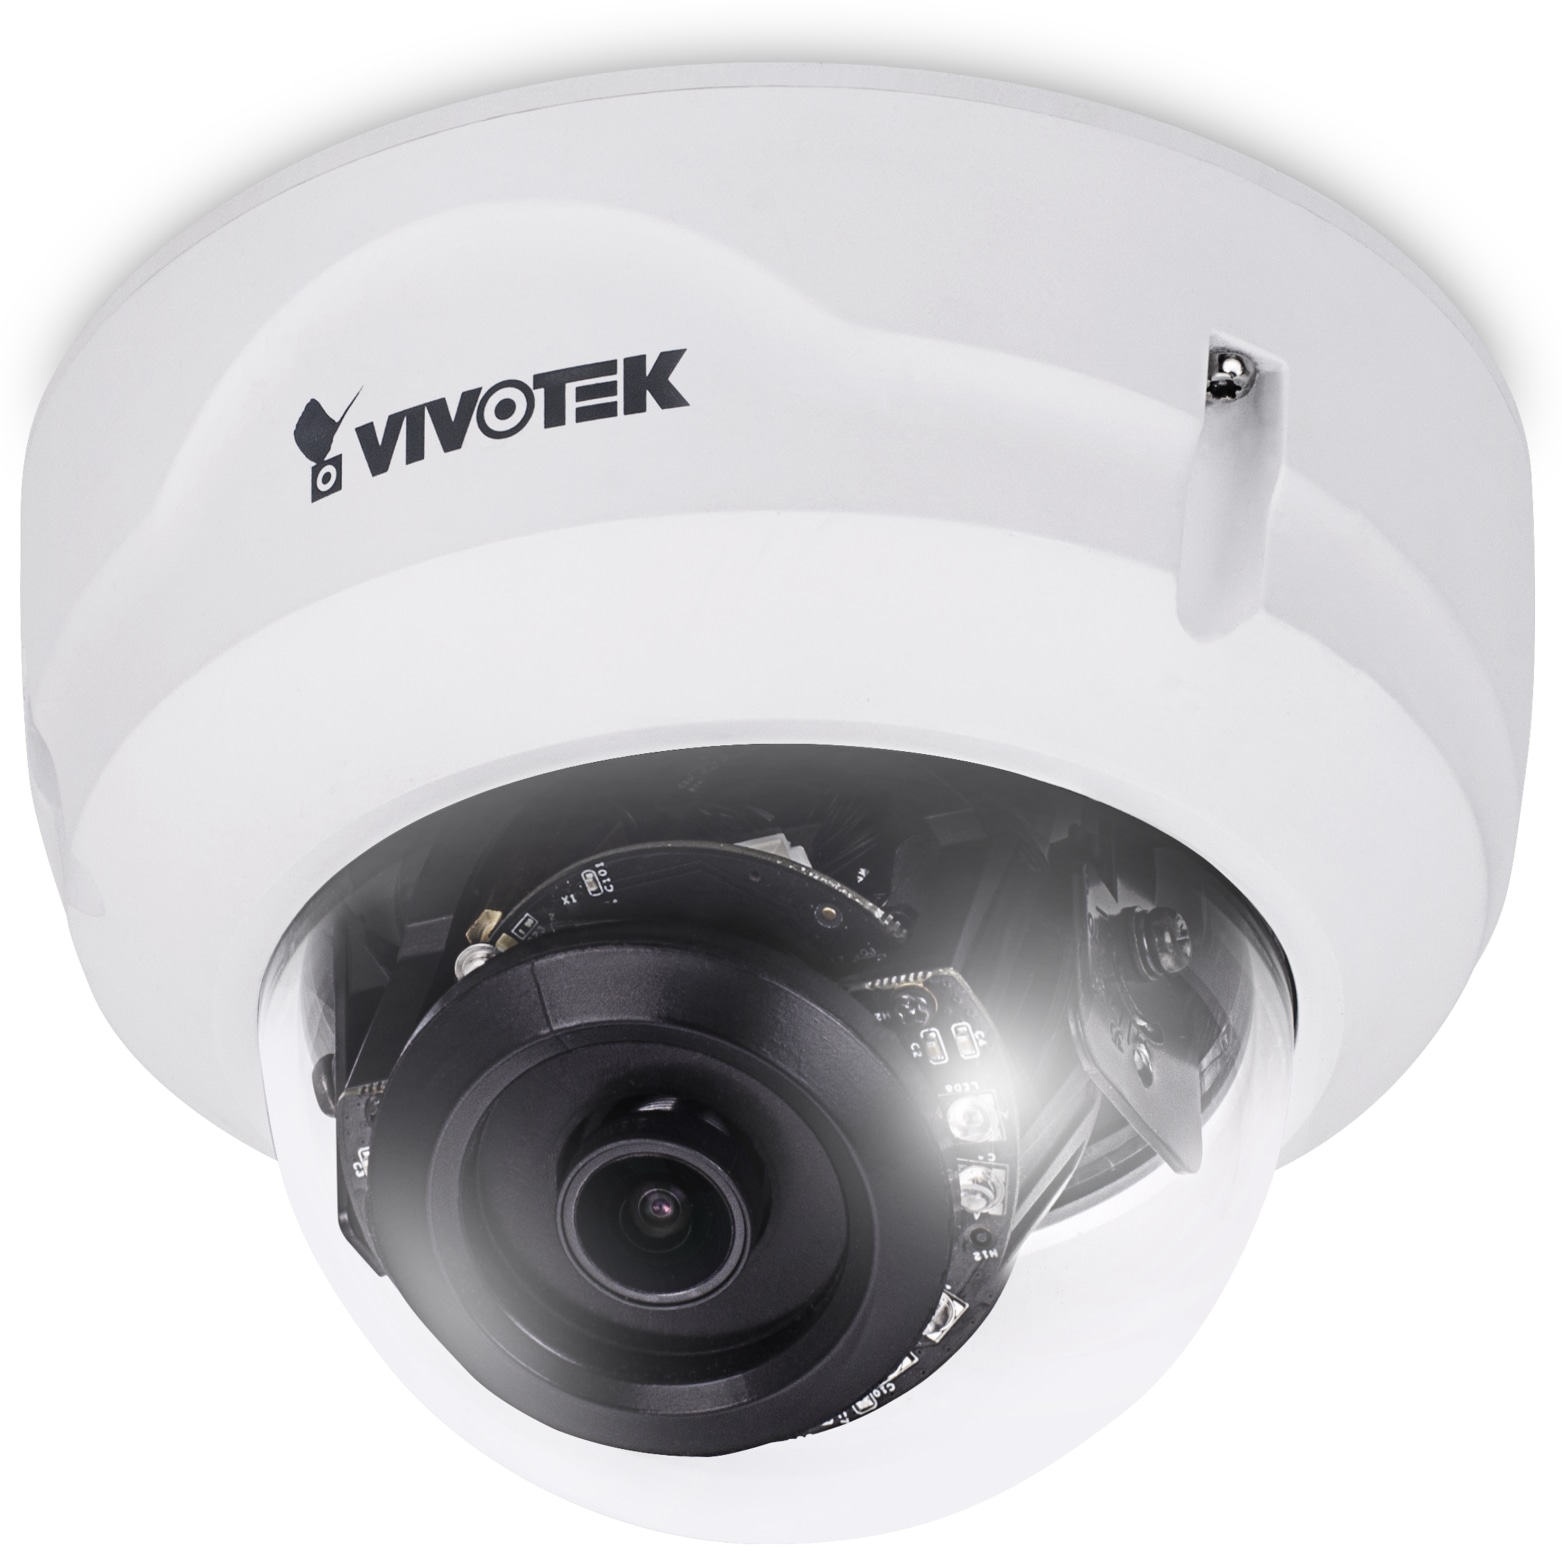 Vivotek überwachungskamera FD8369A, IP, POE, Dome, 2MP, außen